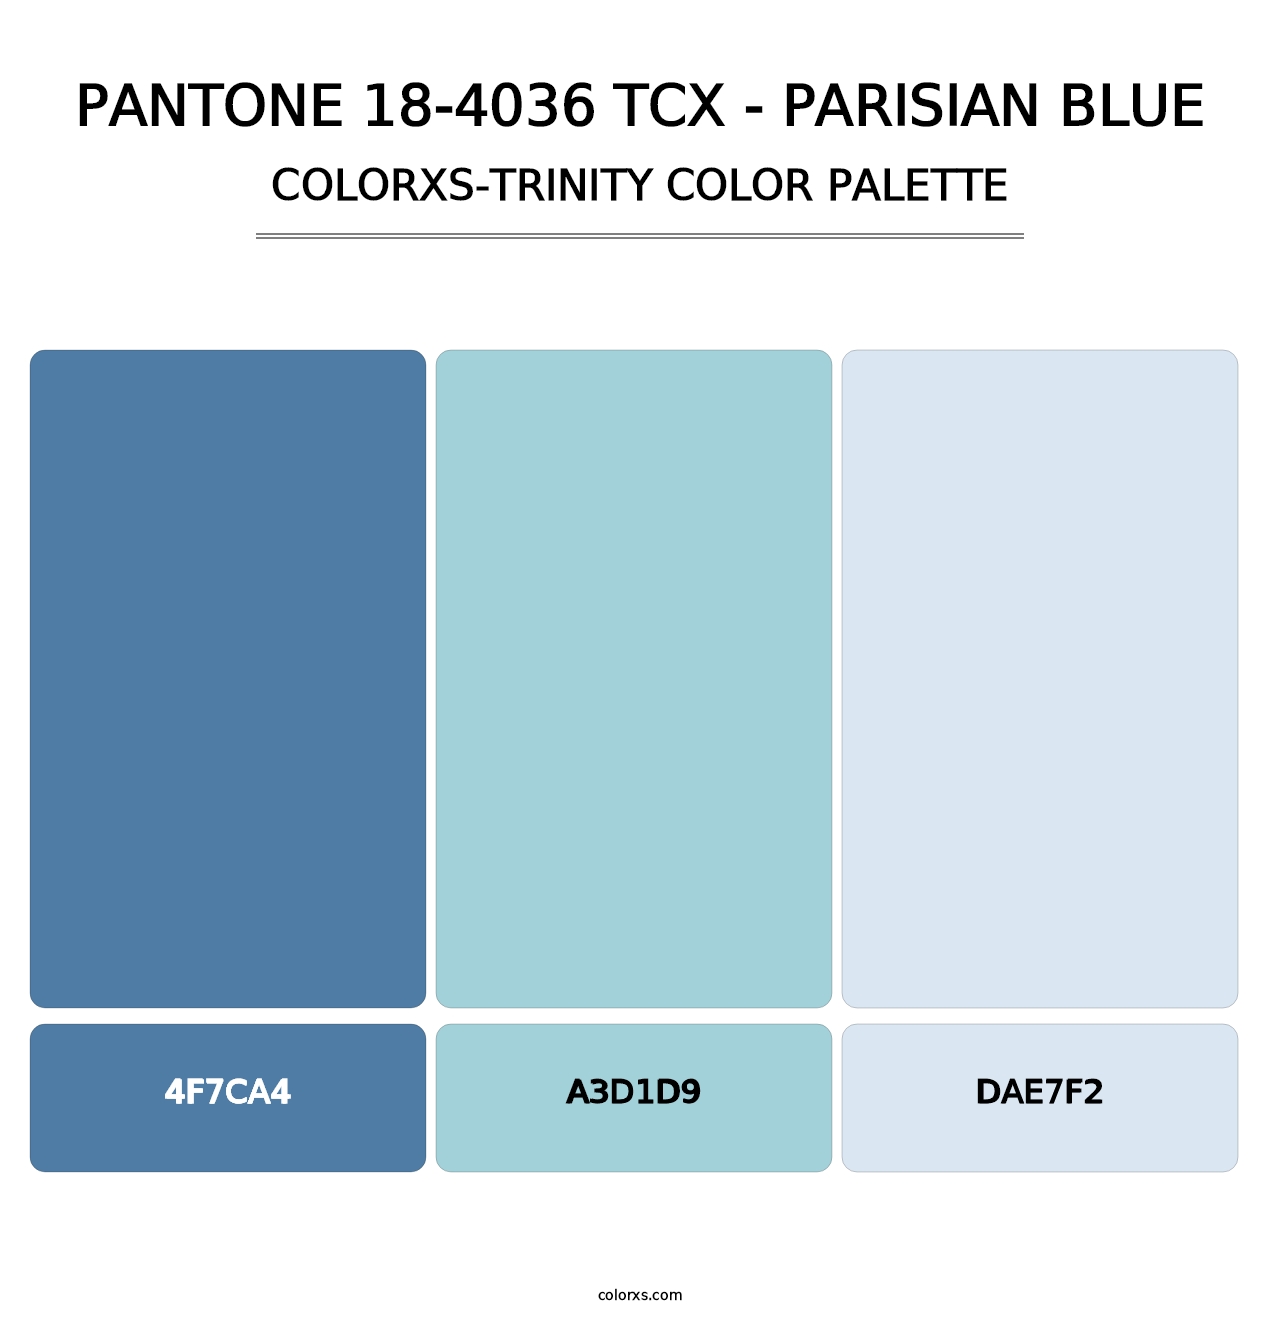 PANTONE 18-4036 TCX - Parisian Blue - Colorxs Trinity Palette